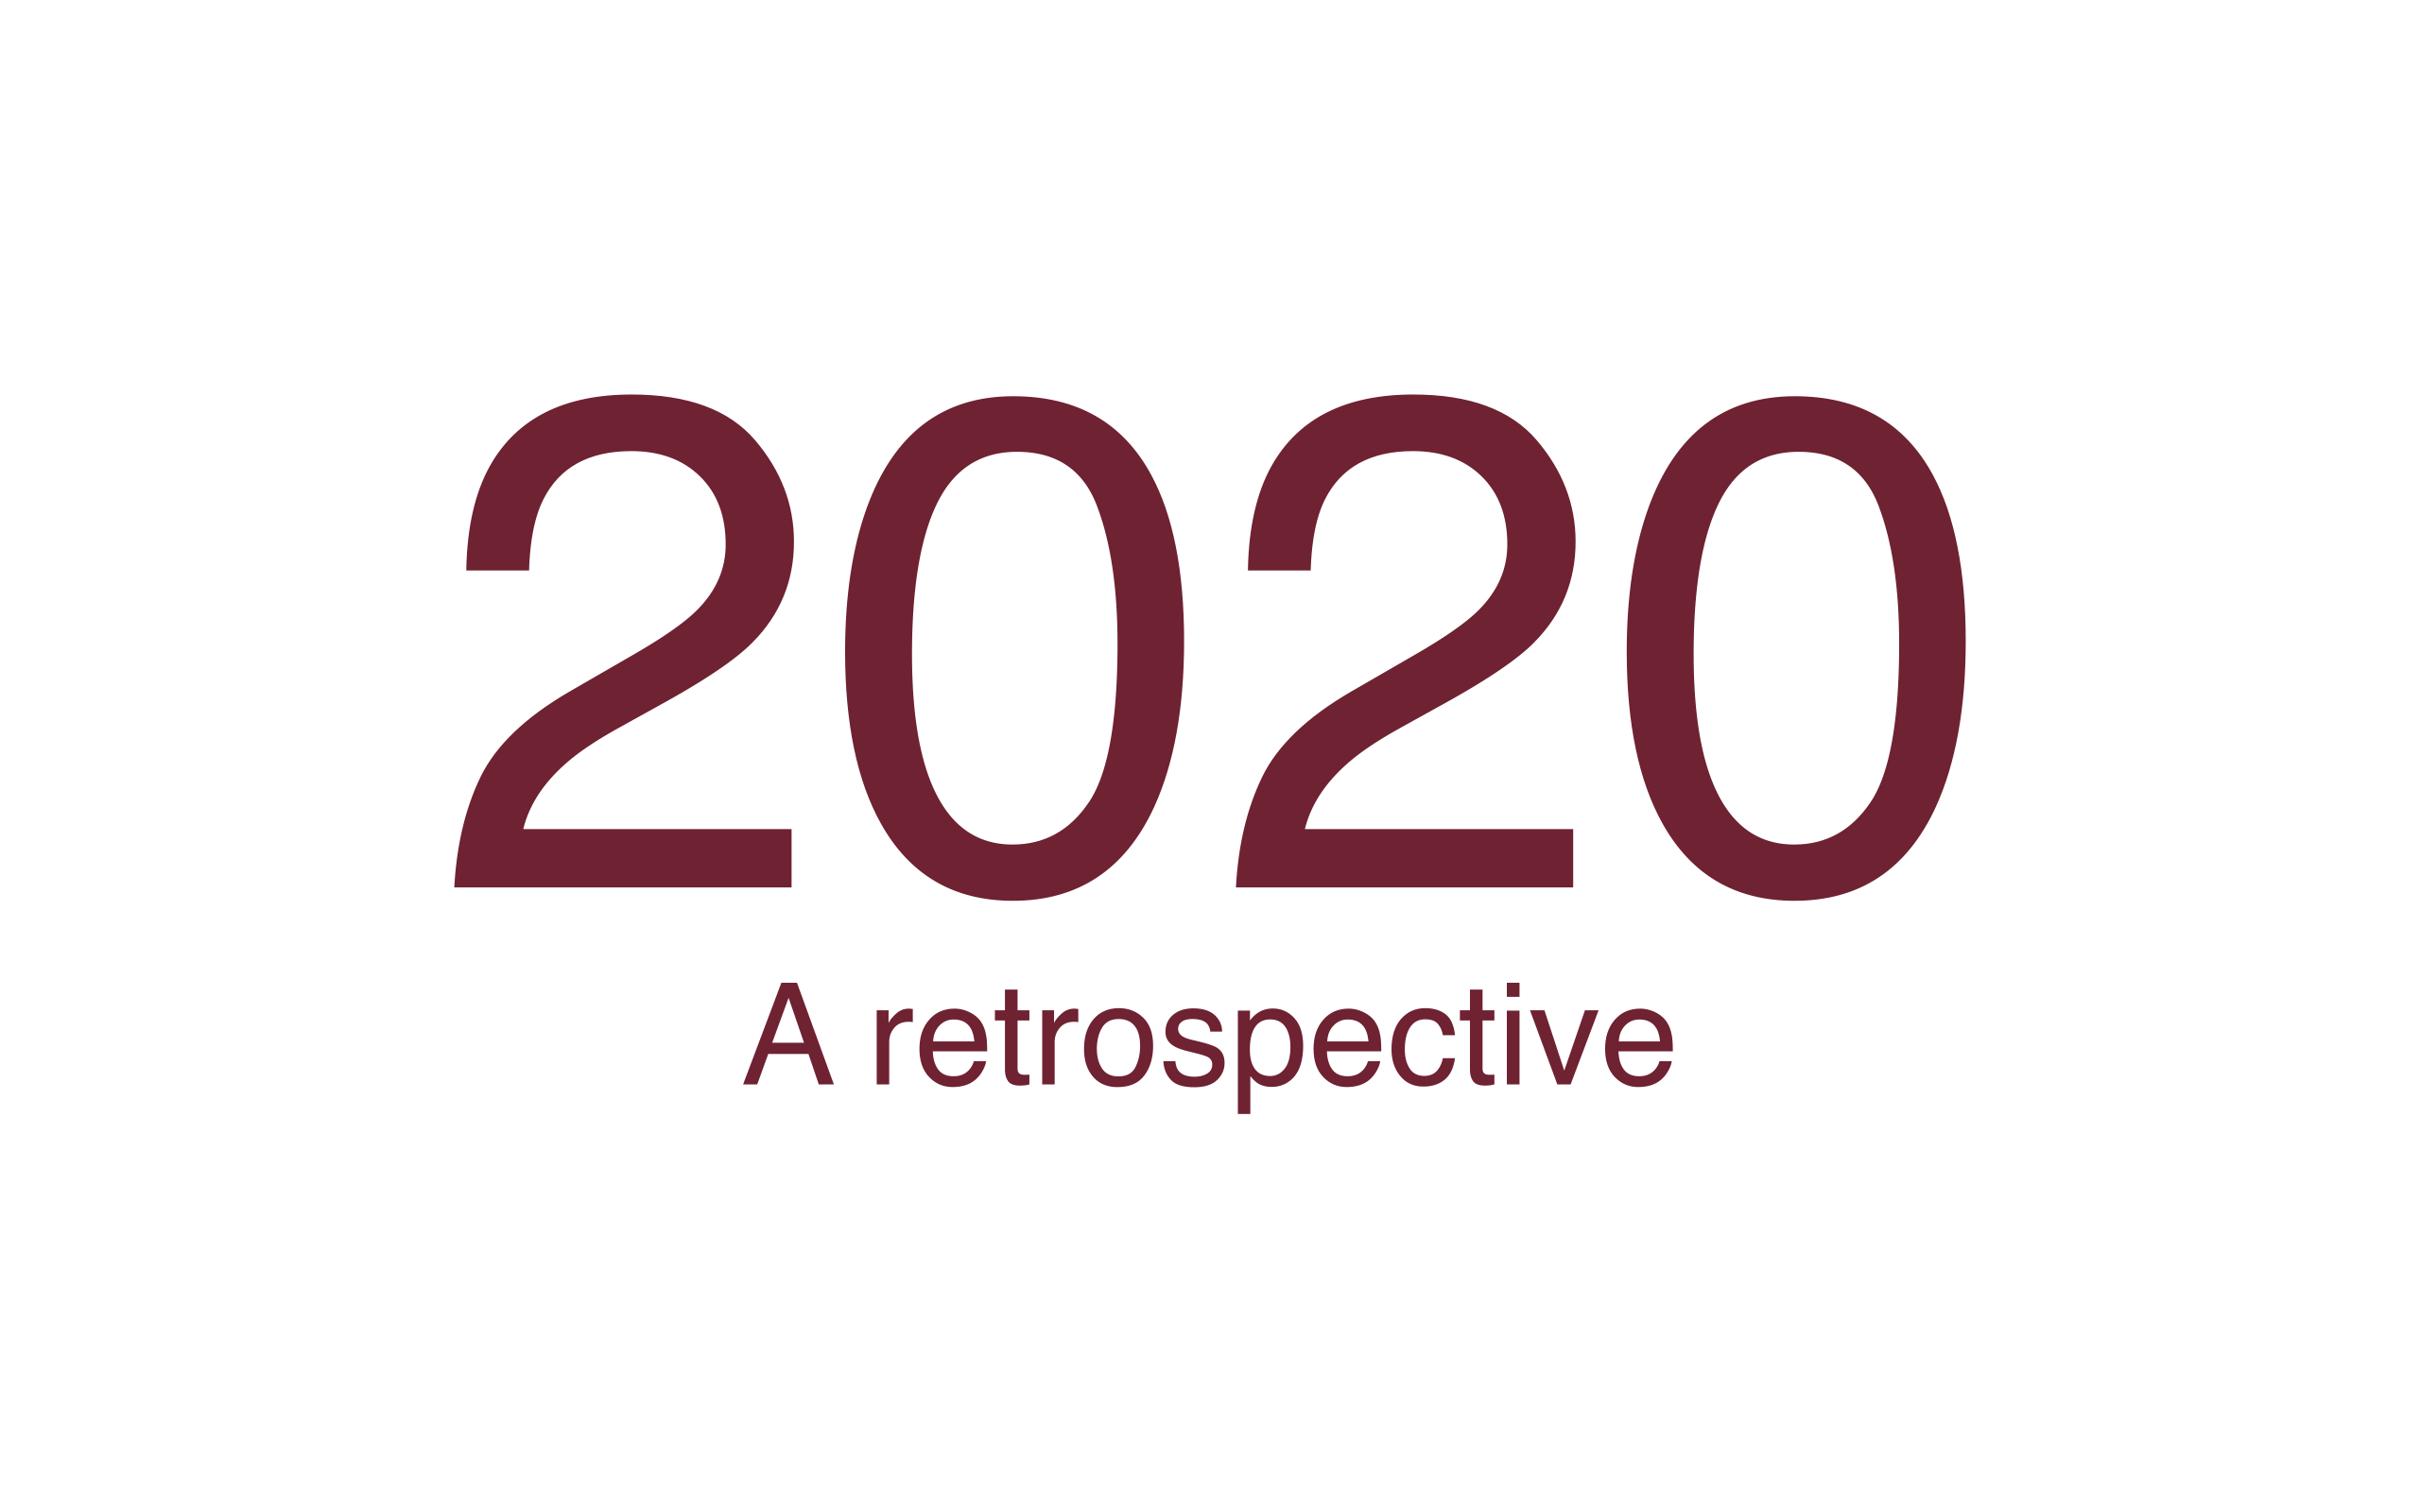 2020 - A retrospective